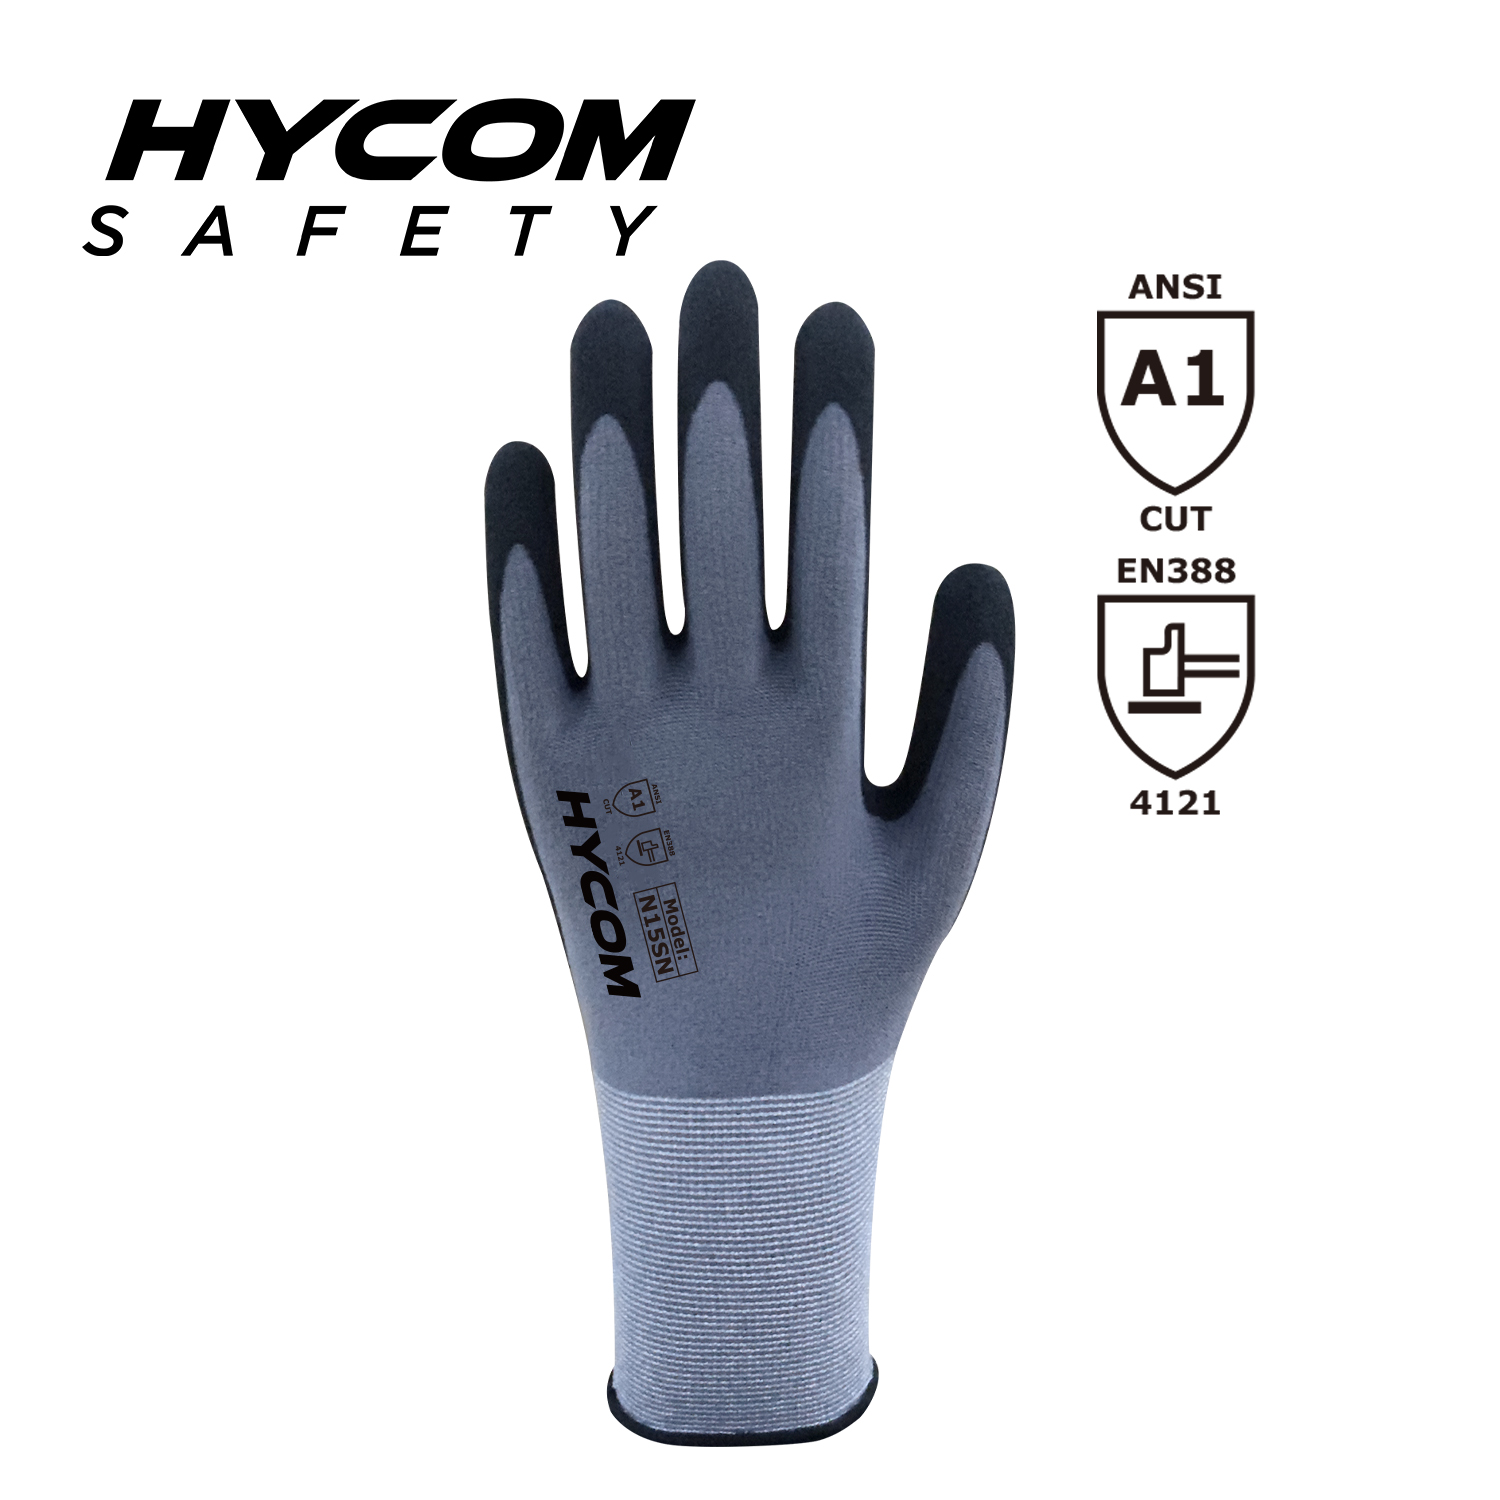 HYCOM 15 g feiner Nylon-Spandex-Handschuh mit sandfarbener Nitrilbeschichtung auf der Handfläche, Bildschirm-Touch-Arbeitshandschuh